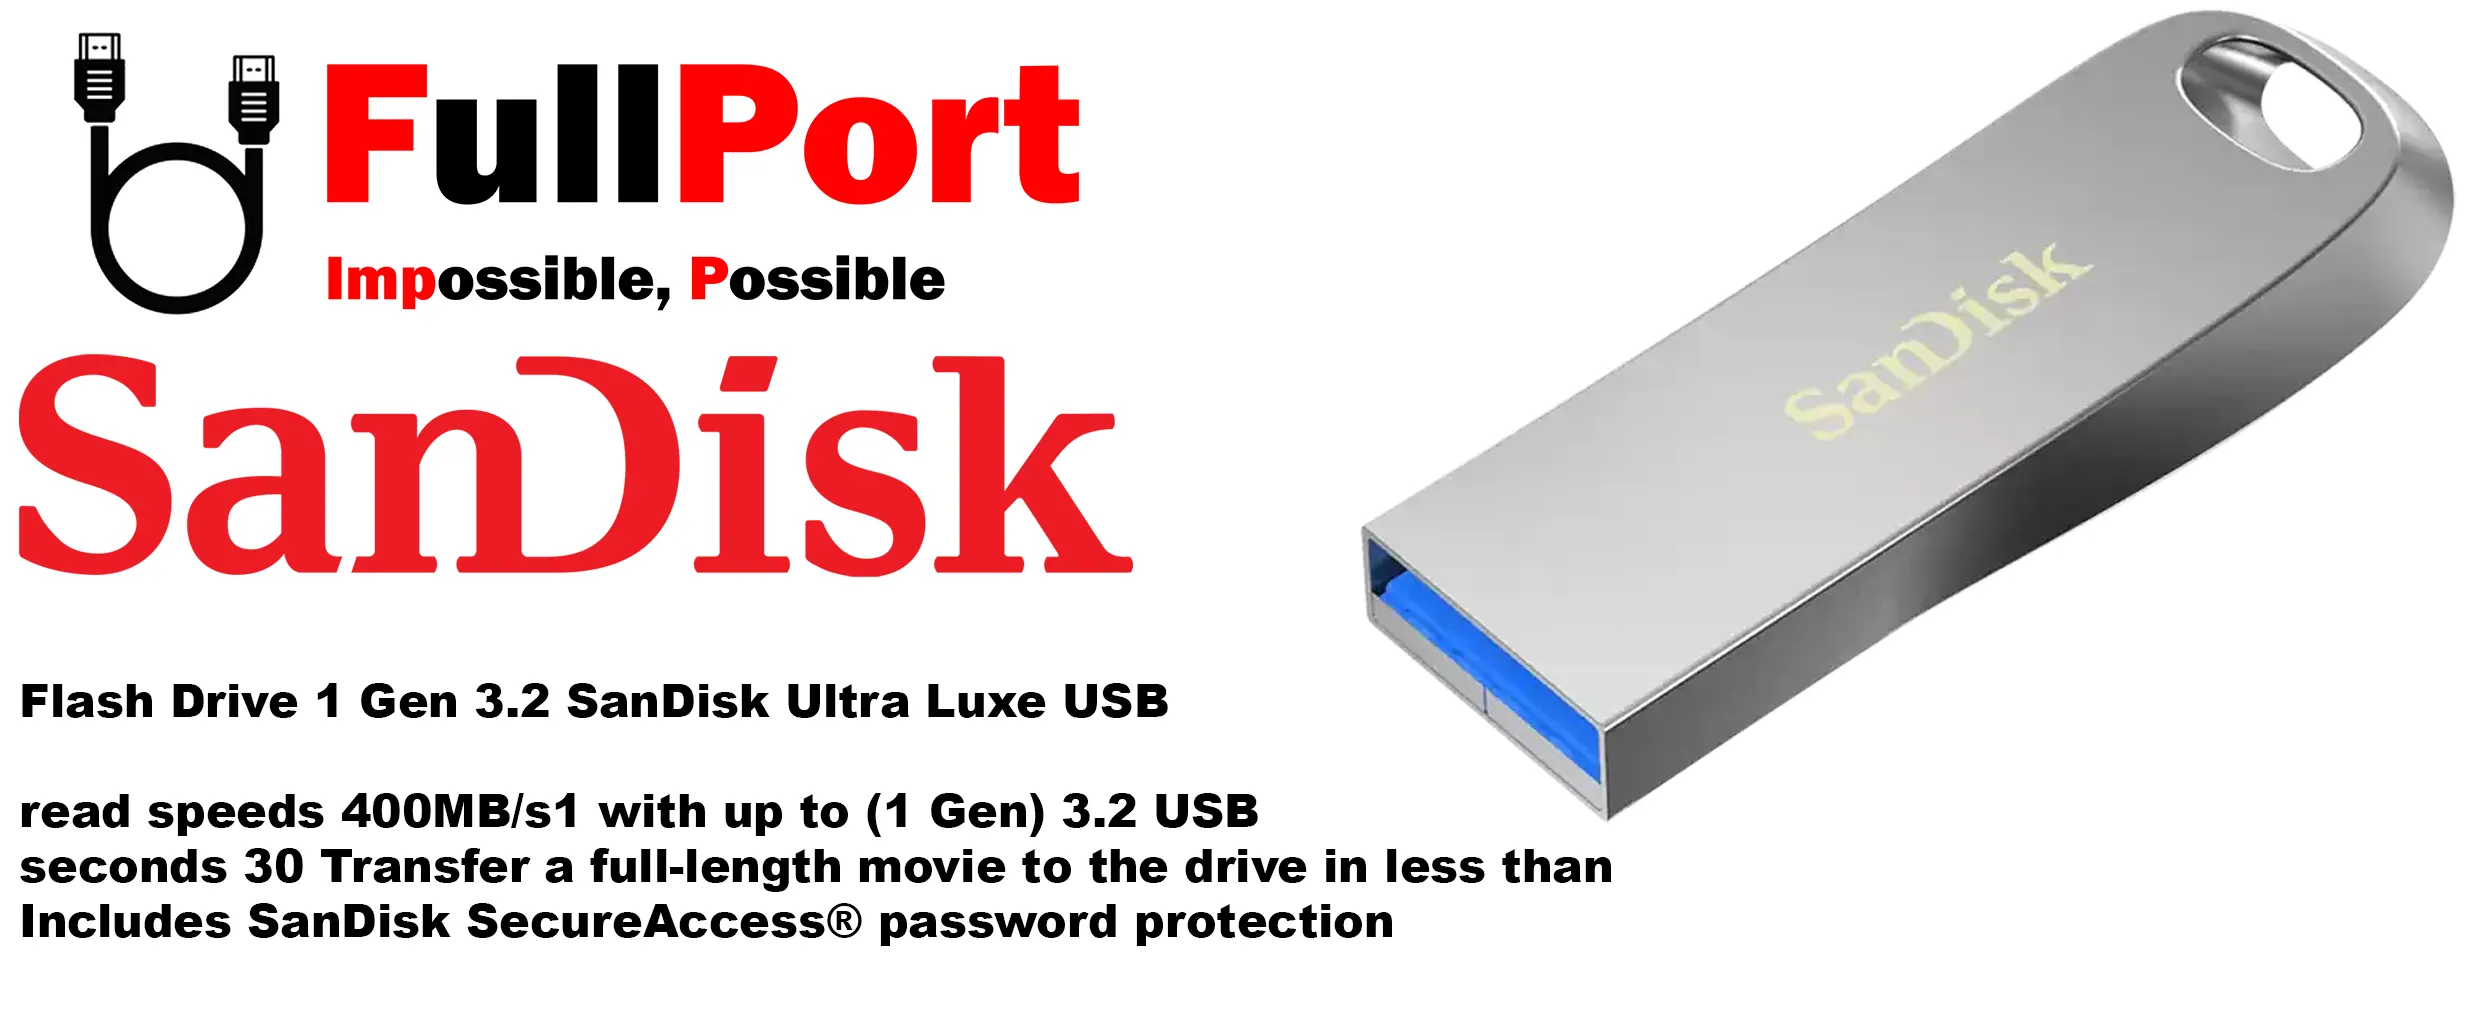 خرید اینترنتی فلش سن دیسک مدل Sandisk SDCZ74 Ultra Luxe USB3.2 از فروشگاه اینترنتی فول پورت